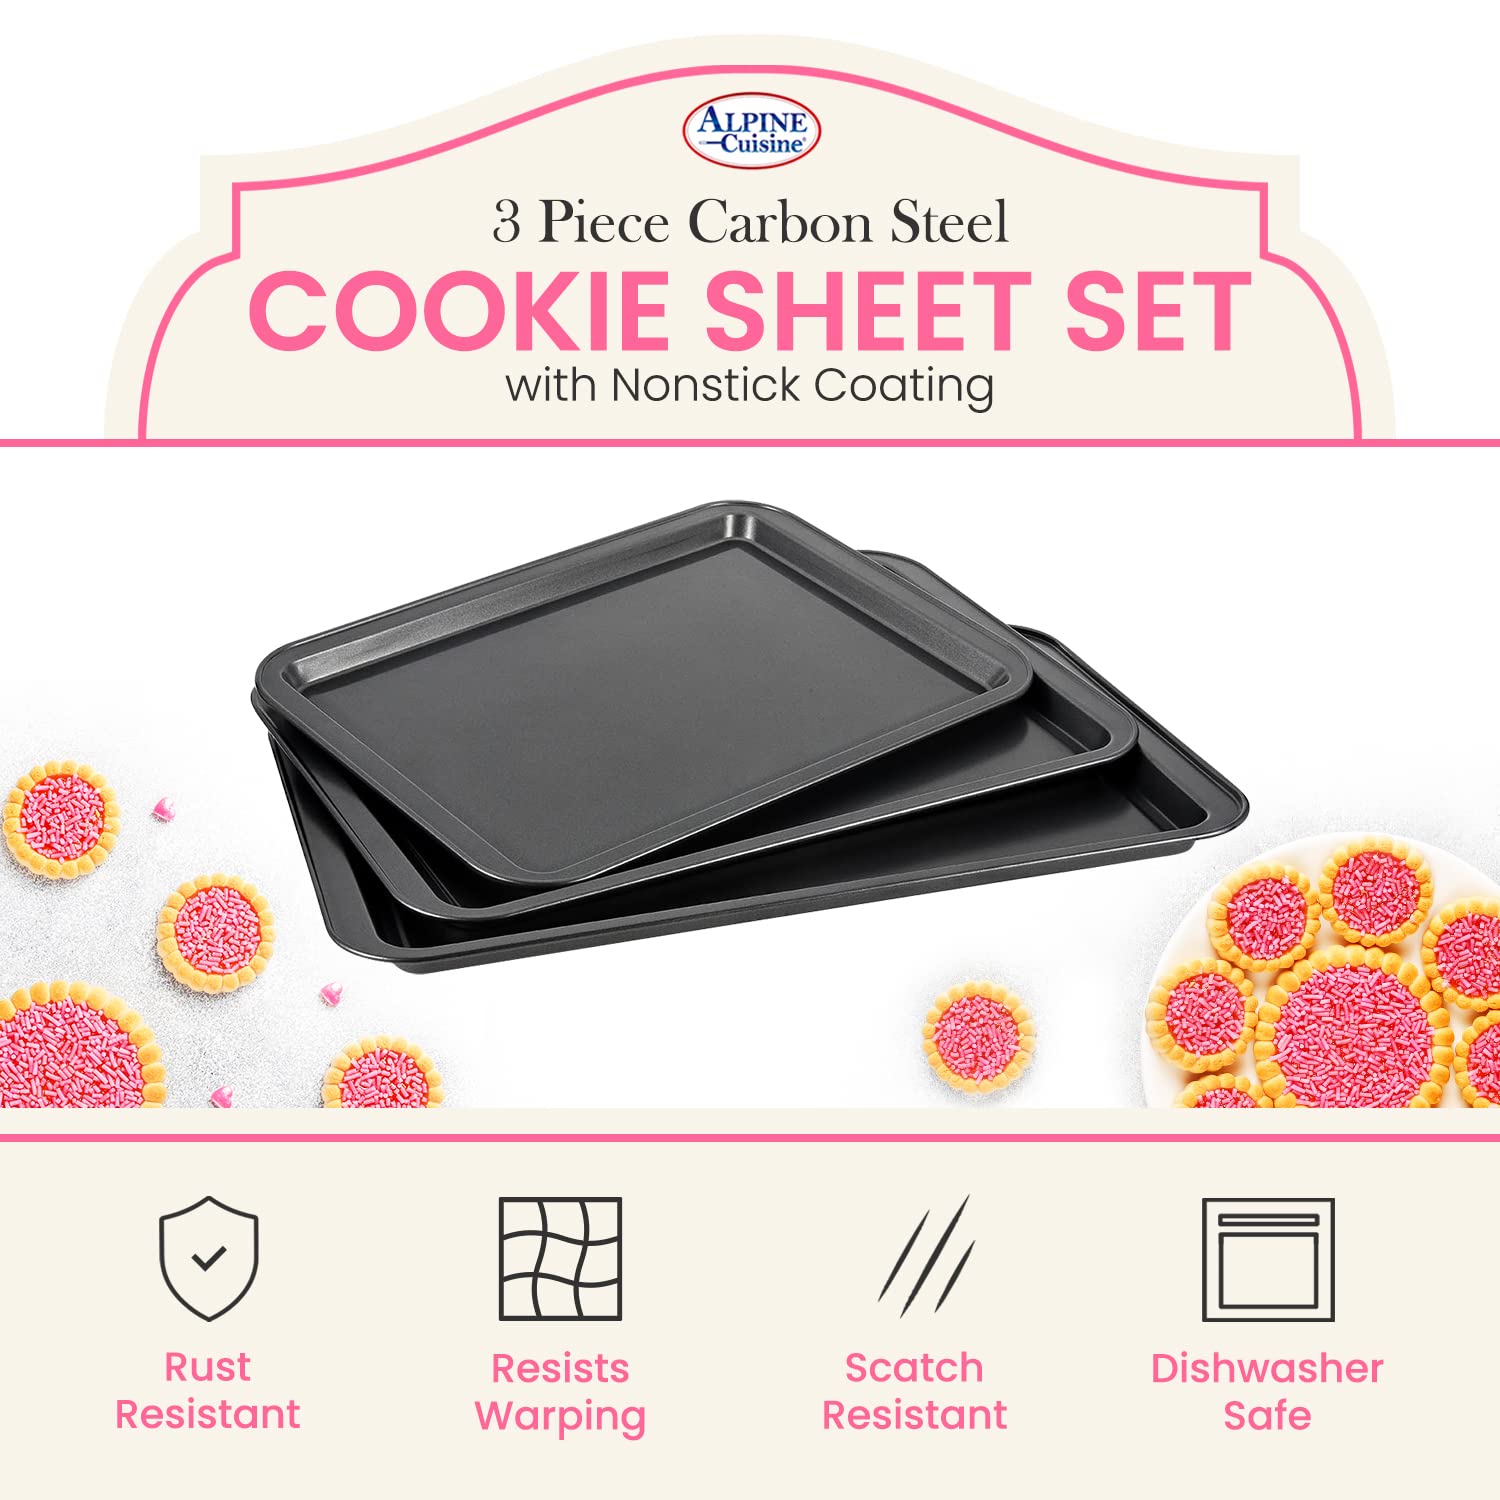 Cookie Sheet Set